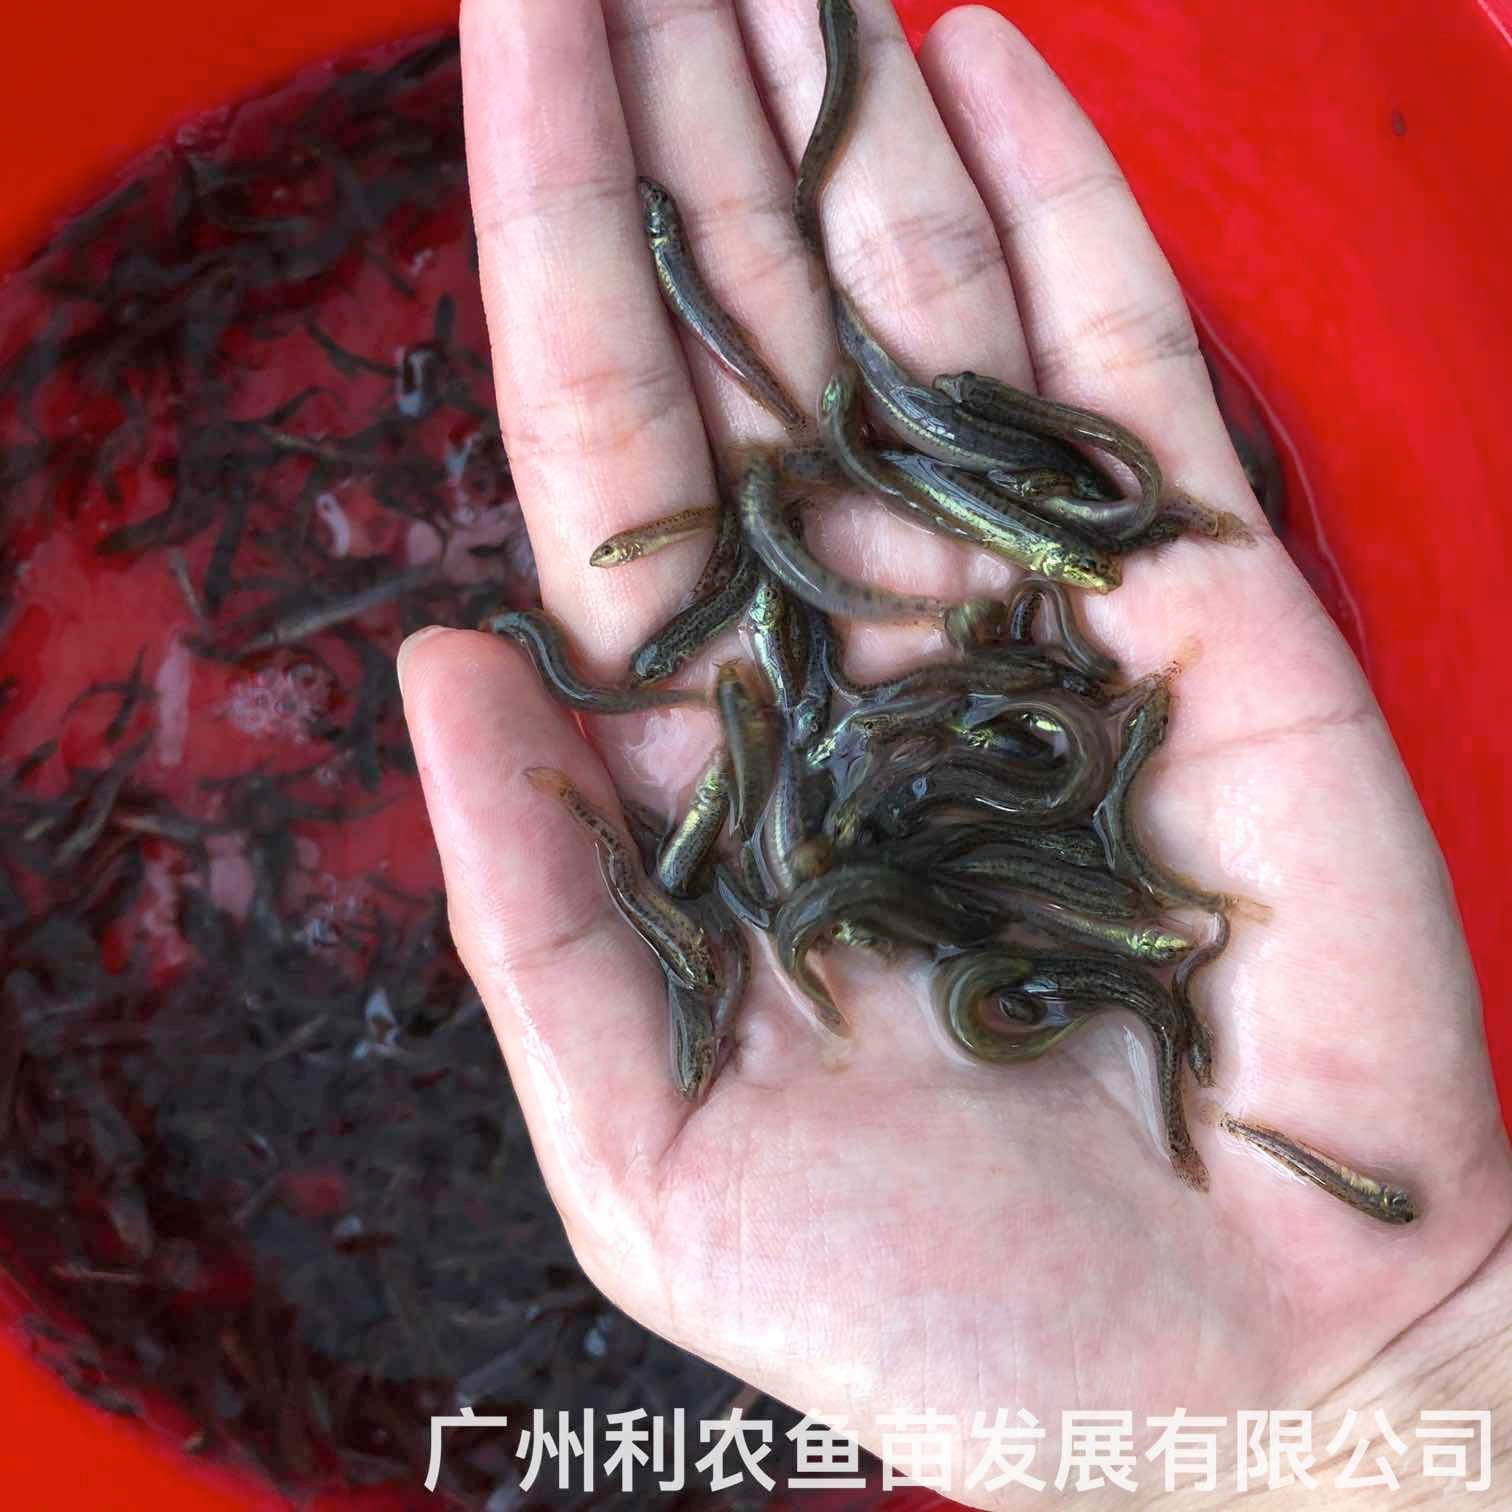 湖南郴州台湾泥鳅苗出售出售湖南岳阳泥鳅鱼苗批发养殖基地